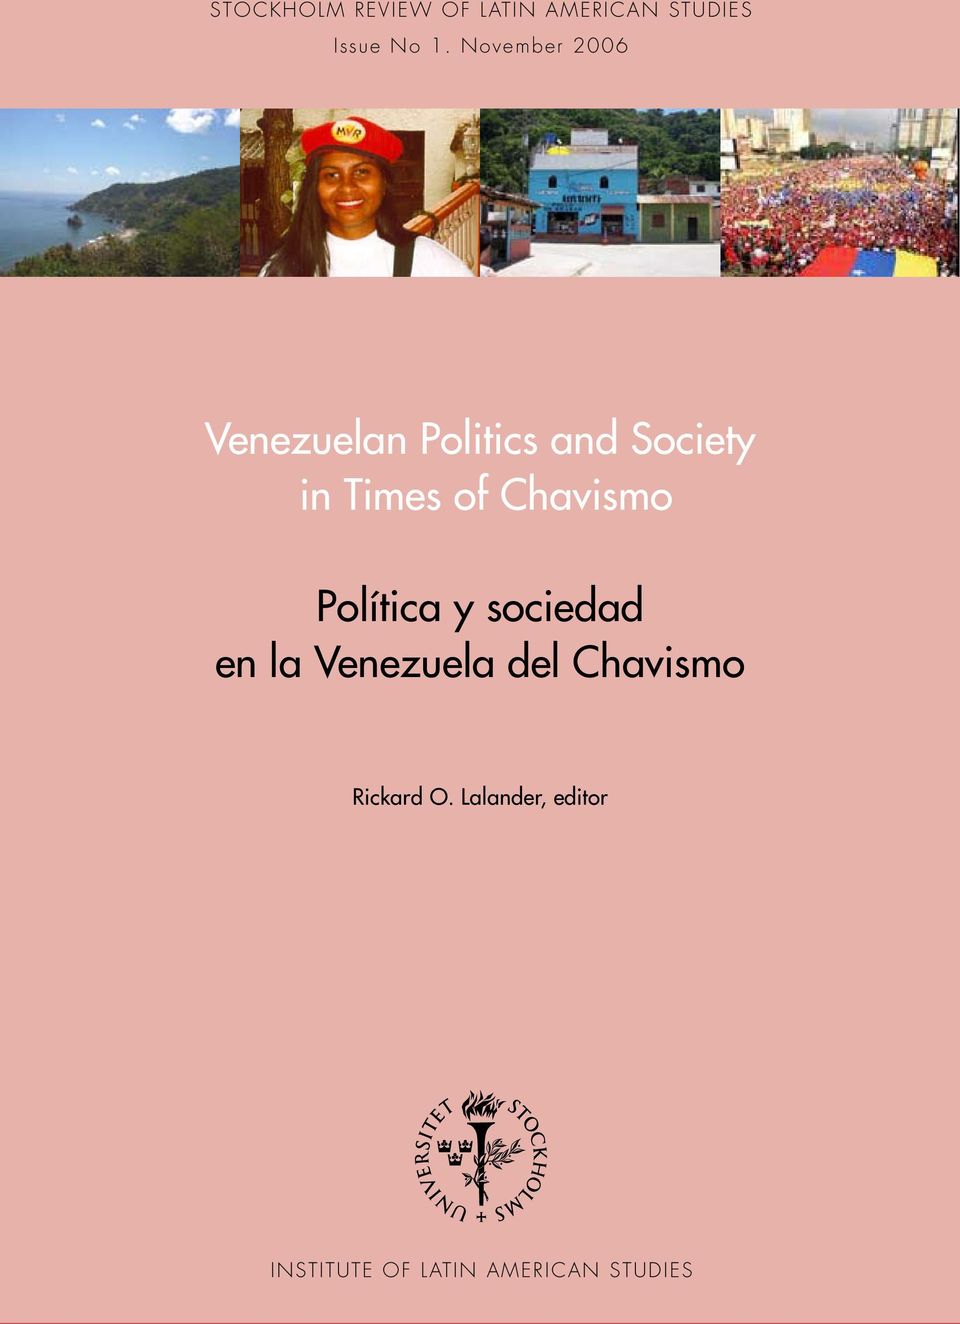 Chavismo Política y sociedad en la Venezuela del Chavismo